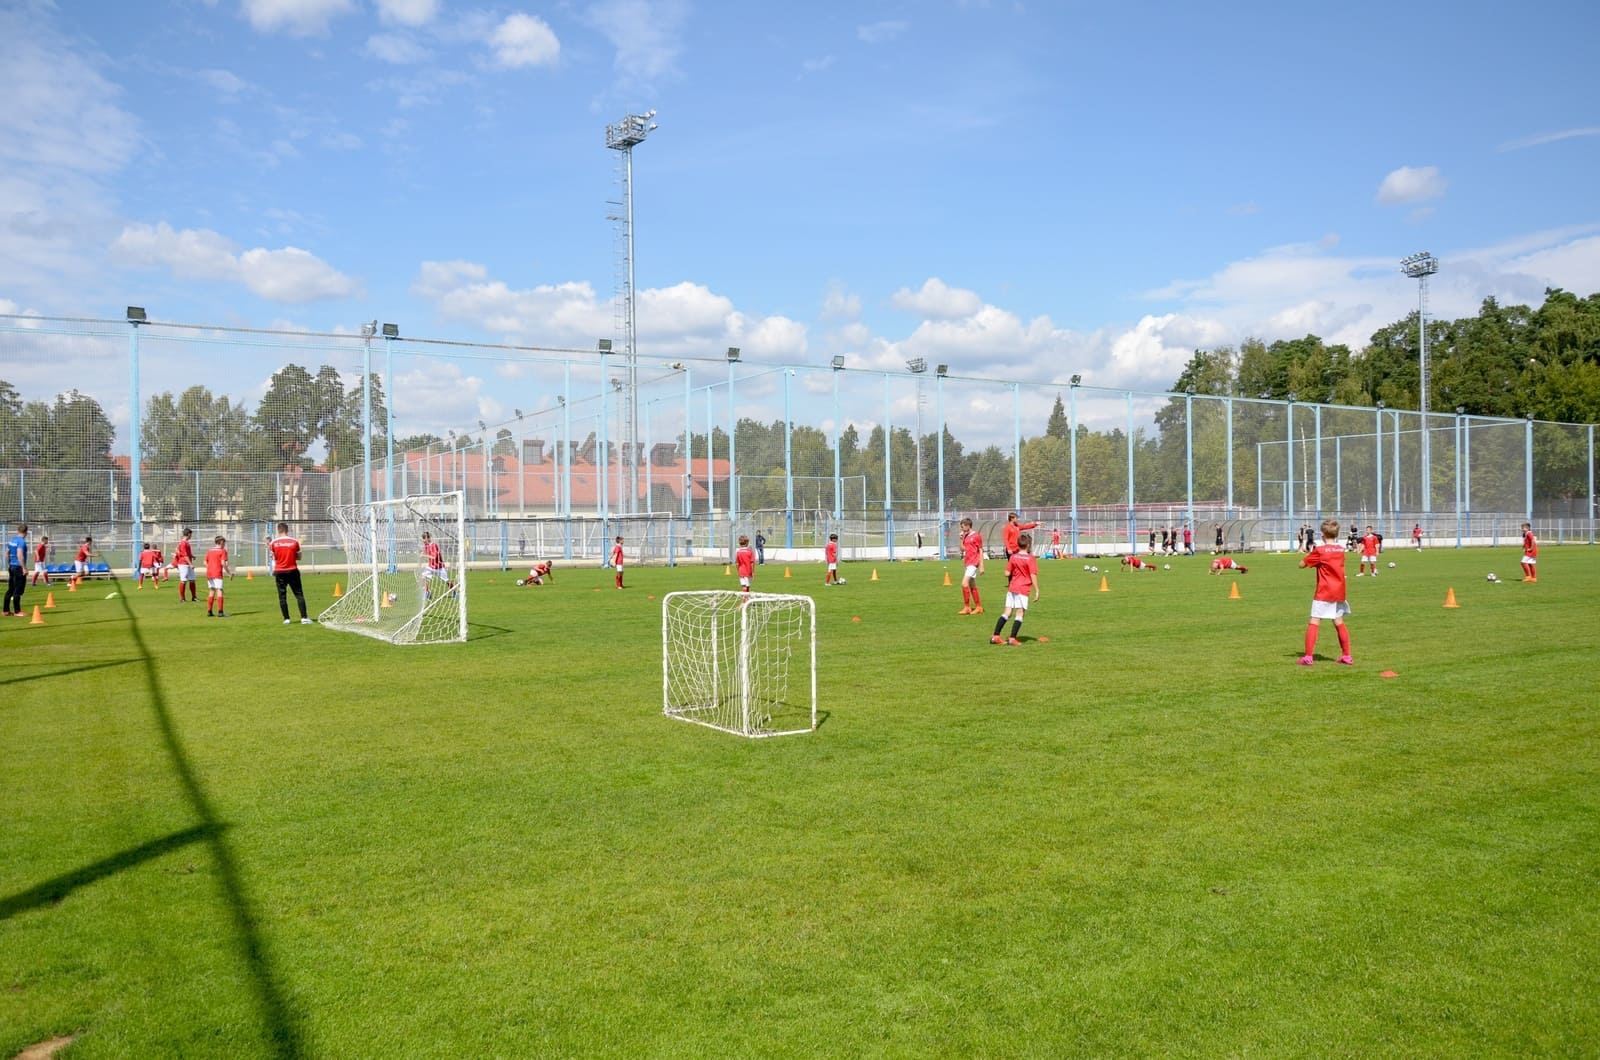 «FC Stuttgart - Кратово» – футбольный лагерь в Подмосковье, фото 4